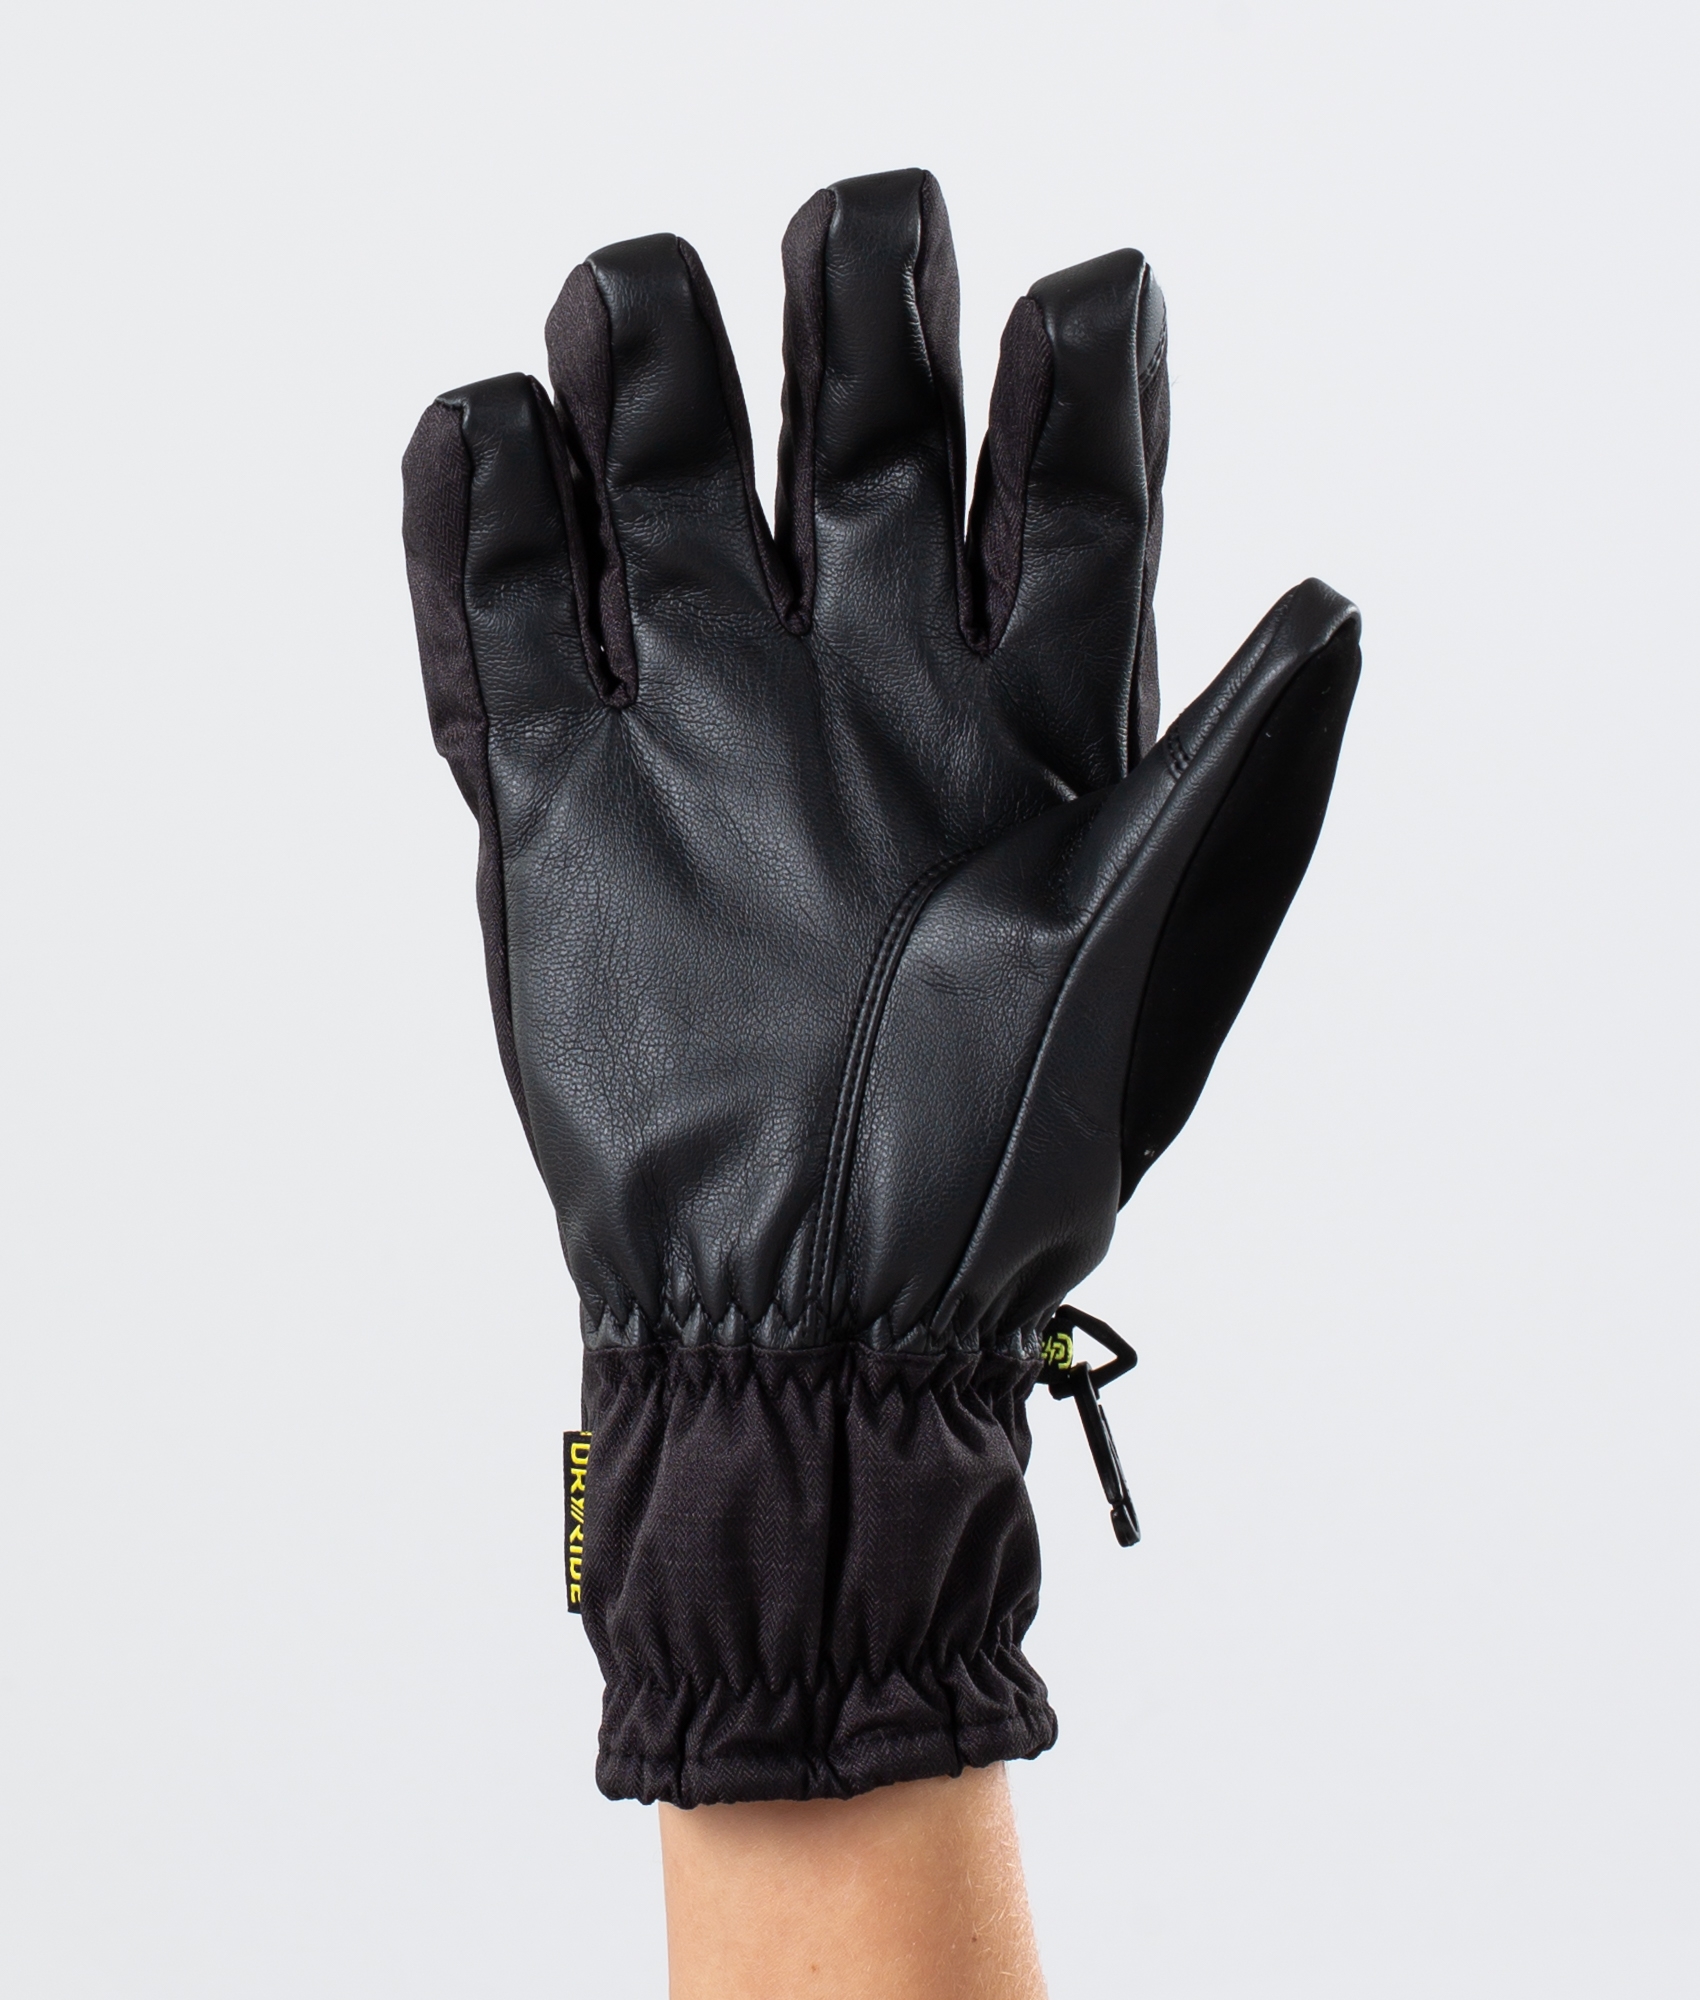 2 in 1 ski gloves